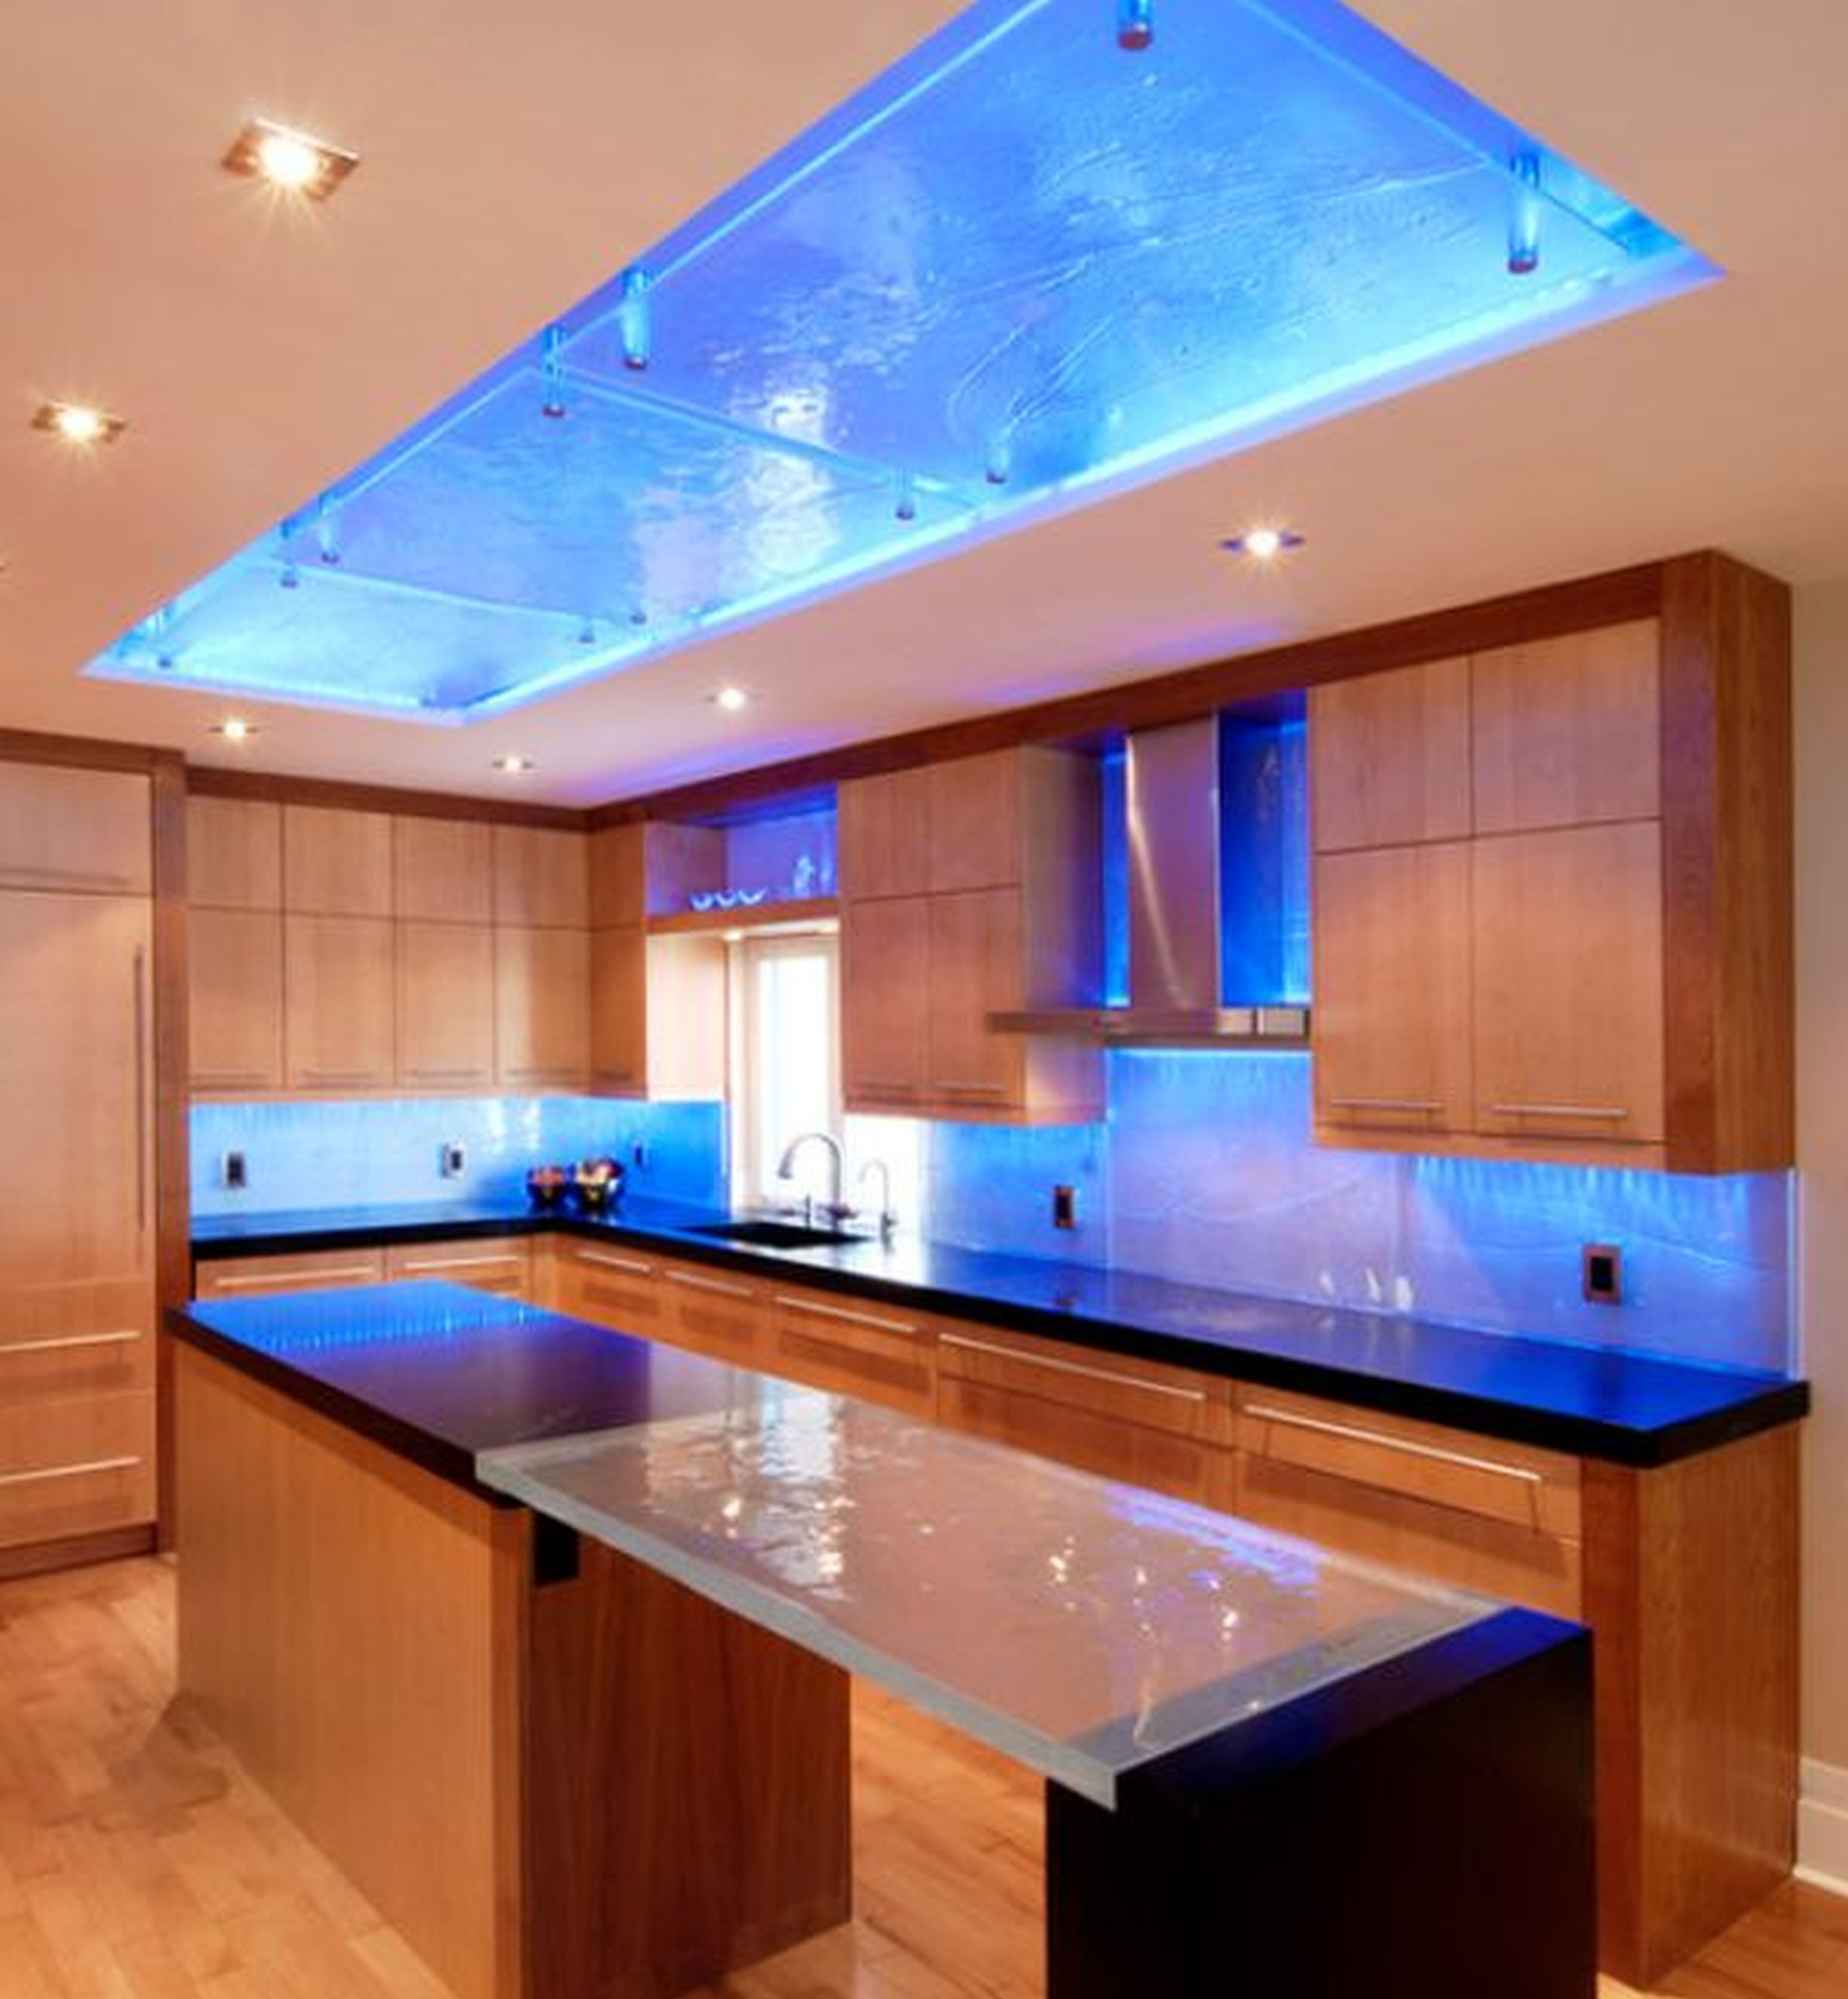 Верхняя подсветка кухни. Освещение на кухне. Кухонный гарнитур с подсветкой. Светодиодная подсветка для кухни. Потолок с подсветкой.